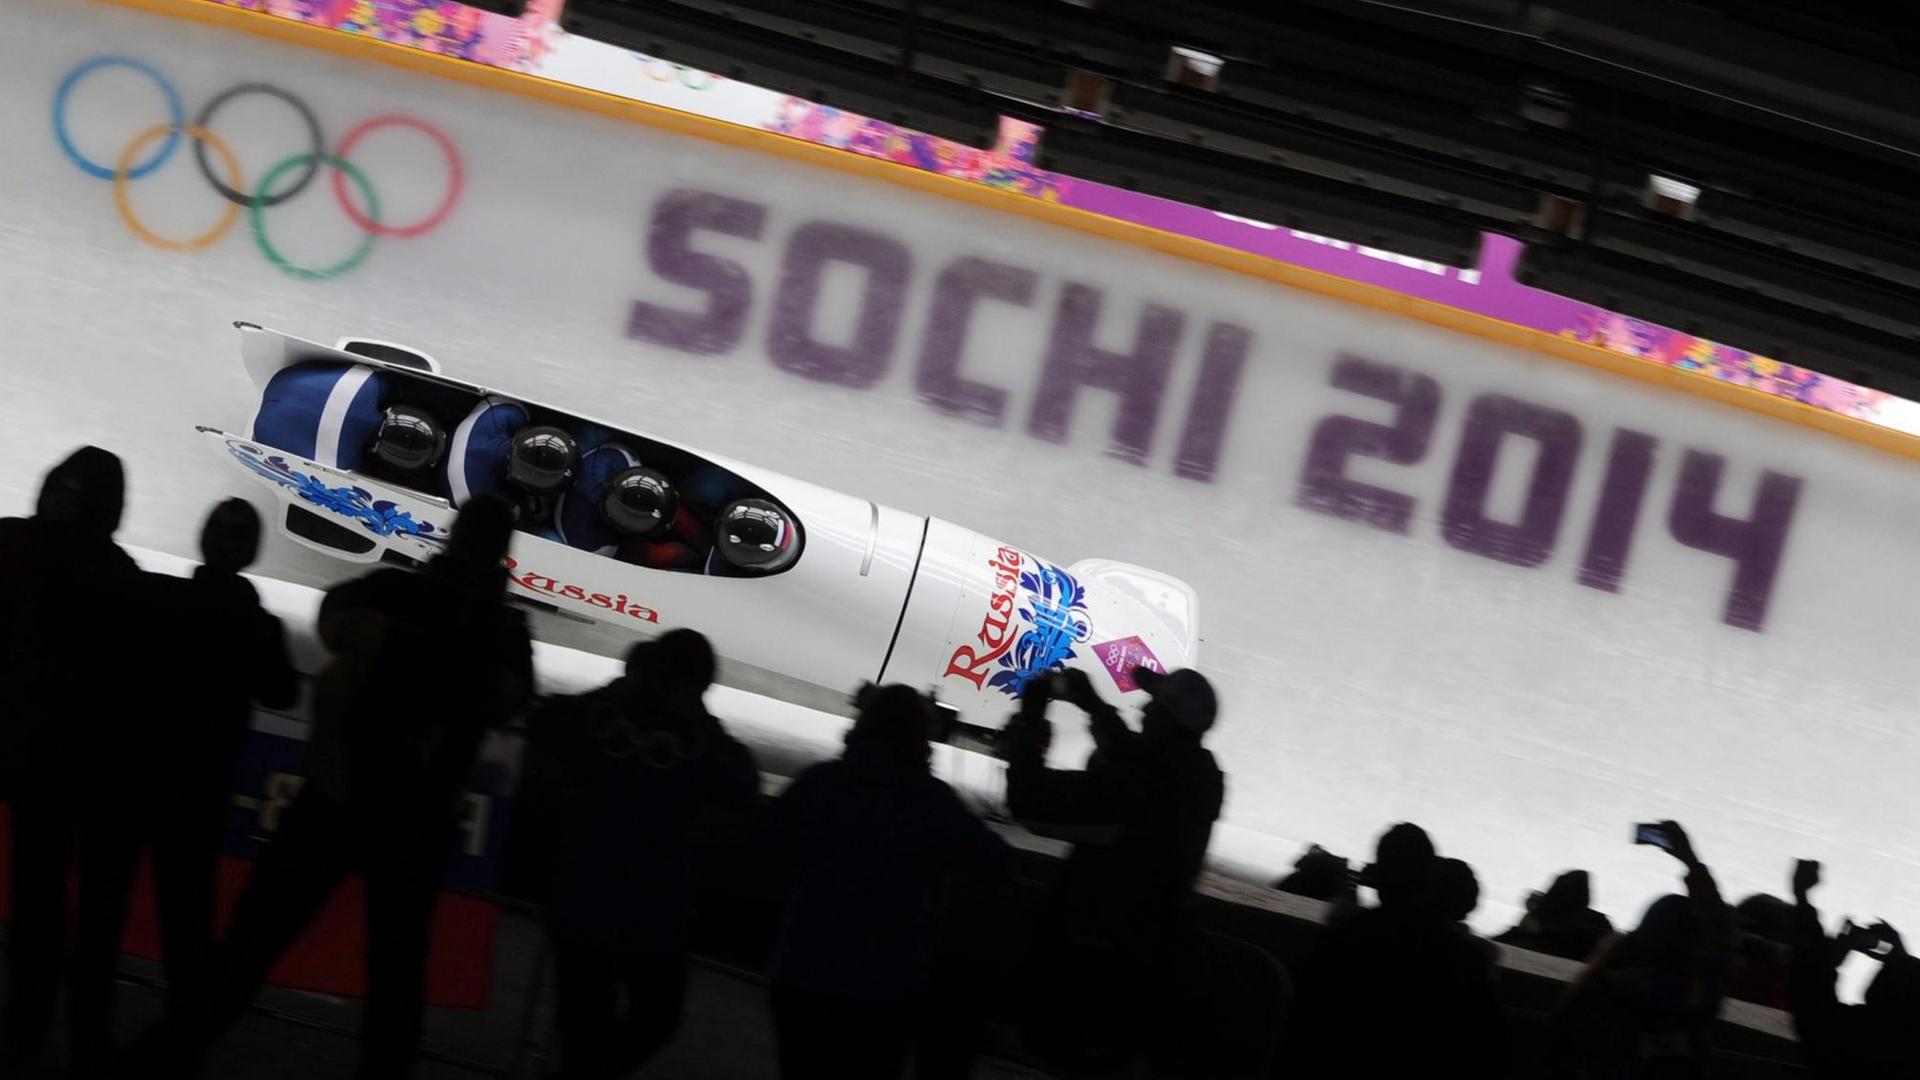 Der russische Viererbob von Alexander Subkow während der Olympischen Spiele in Sotschi 2014. Er soll unbestätigten Berichten zufolge gedopt haben.